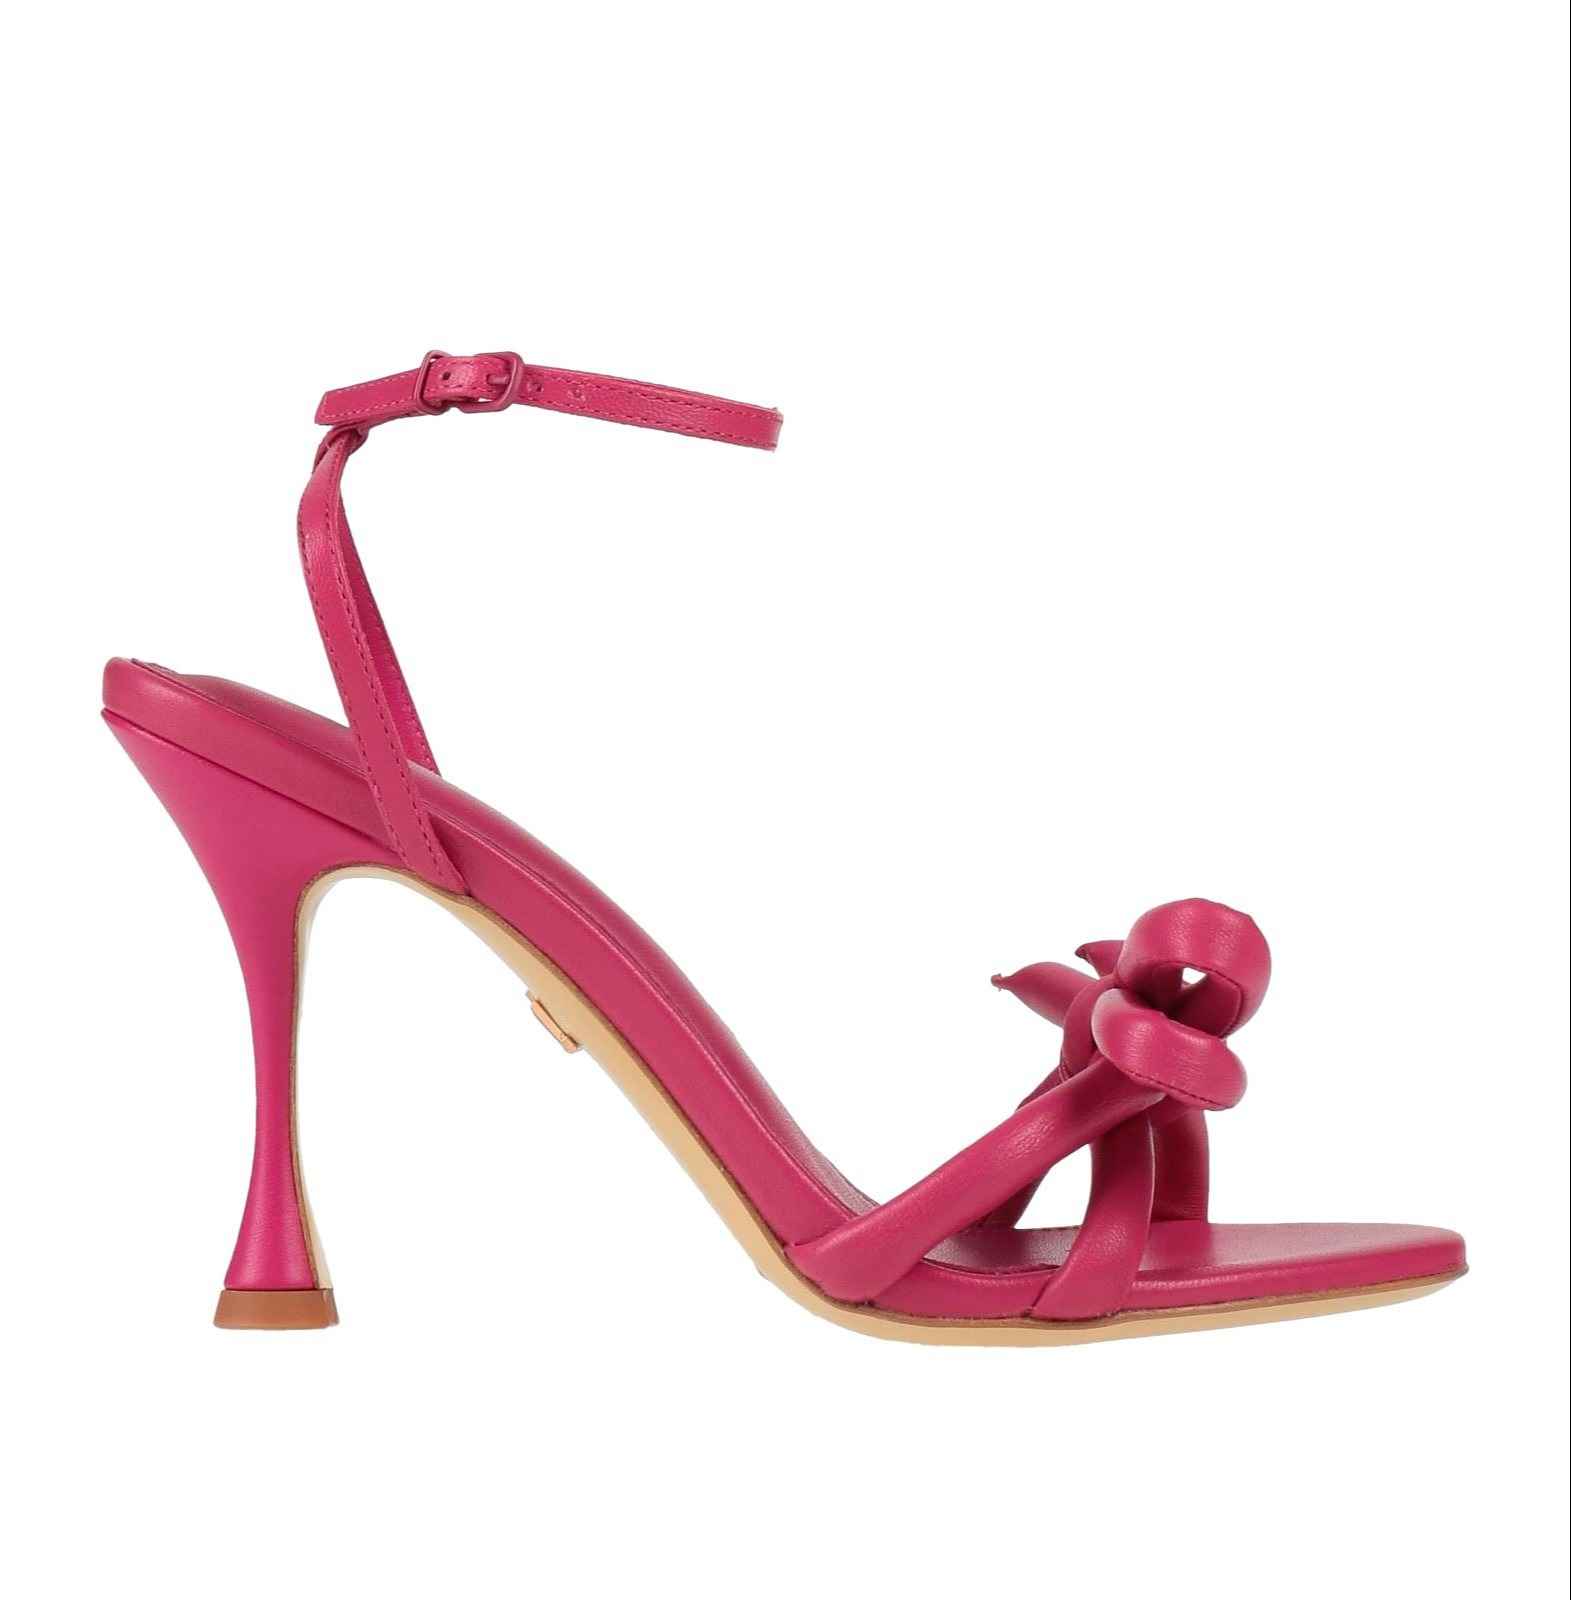 Босоножки Lola Cruz, розовый сандалии sdtrft унисекс на платформе и тонком высоком каблуке 20 см босоножки с ремешком на щиколотке туфли лодочки с открытым носком на шпиль